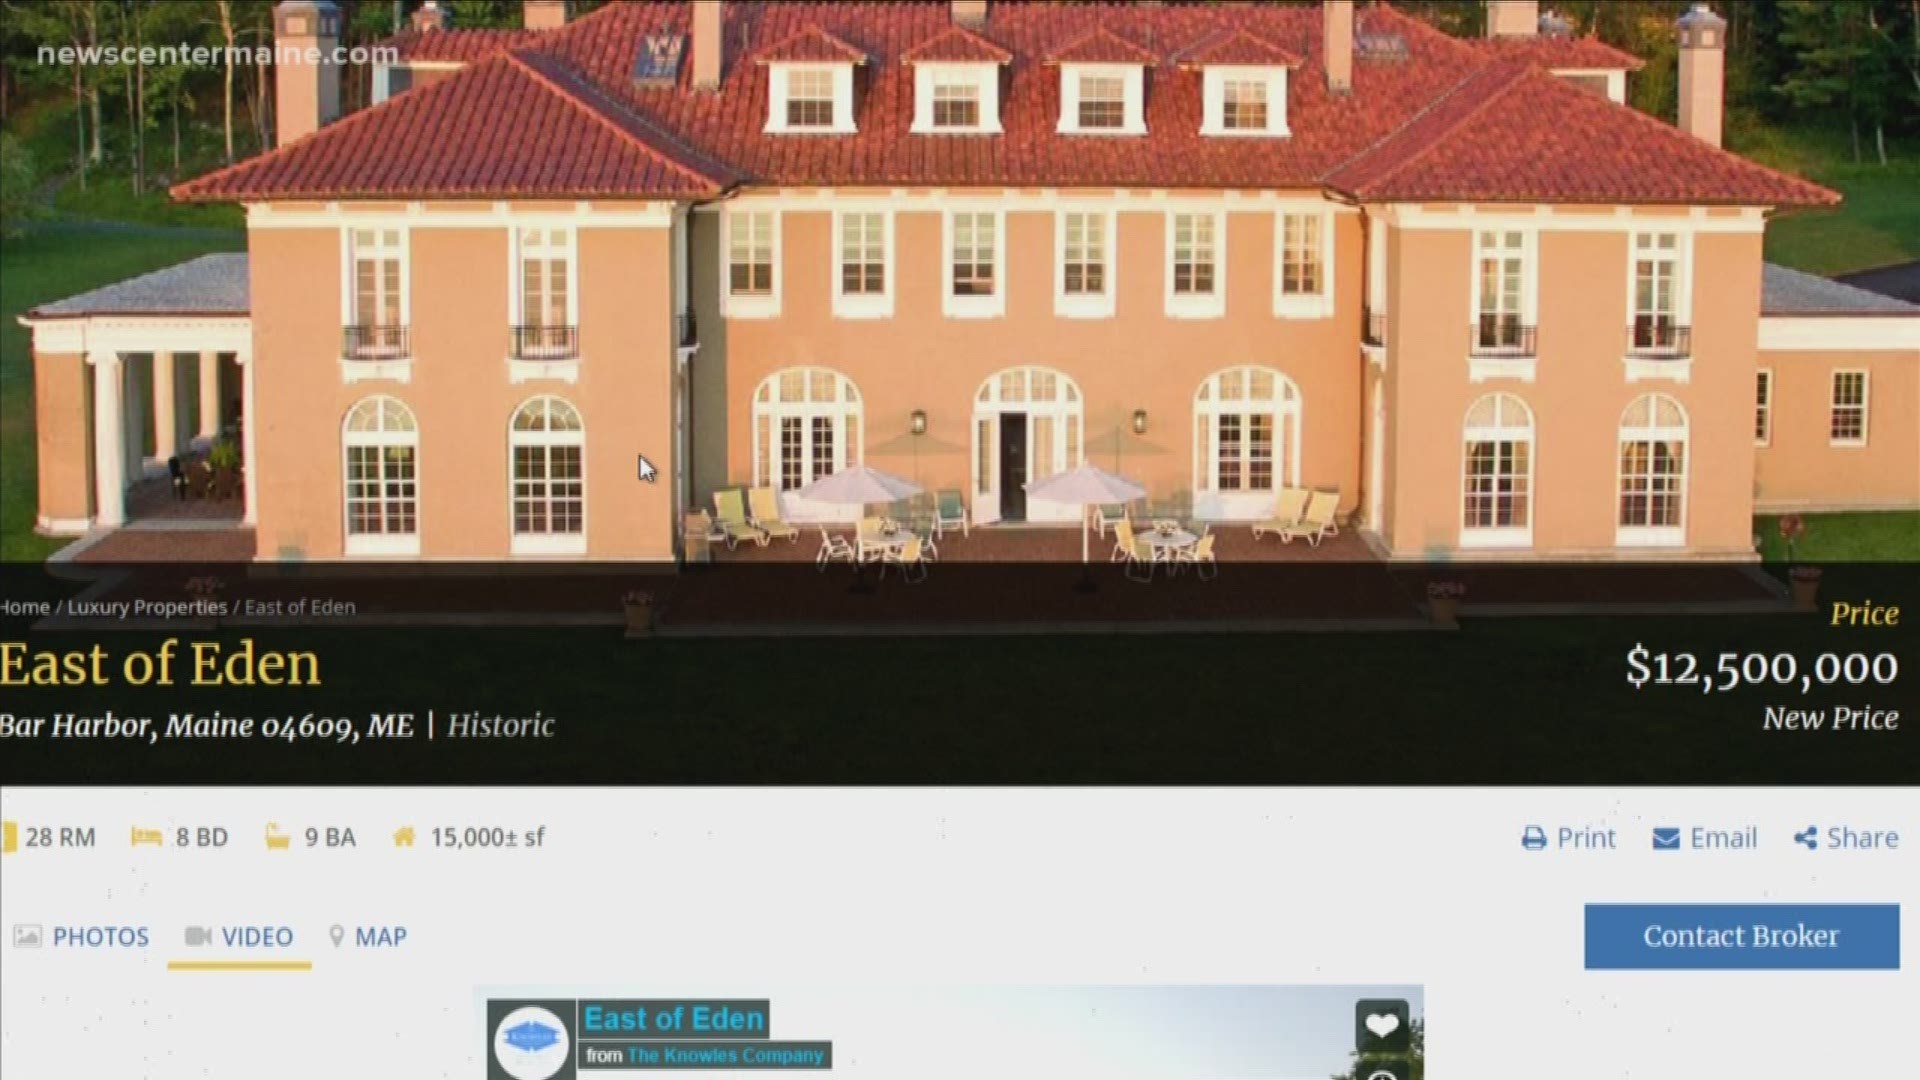 'East of Eden' Bar Harbor cottage mansion listed for $12.5 million